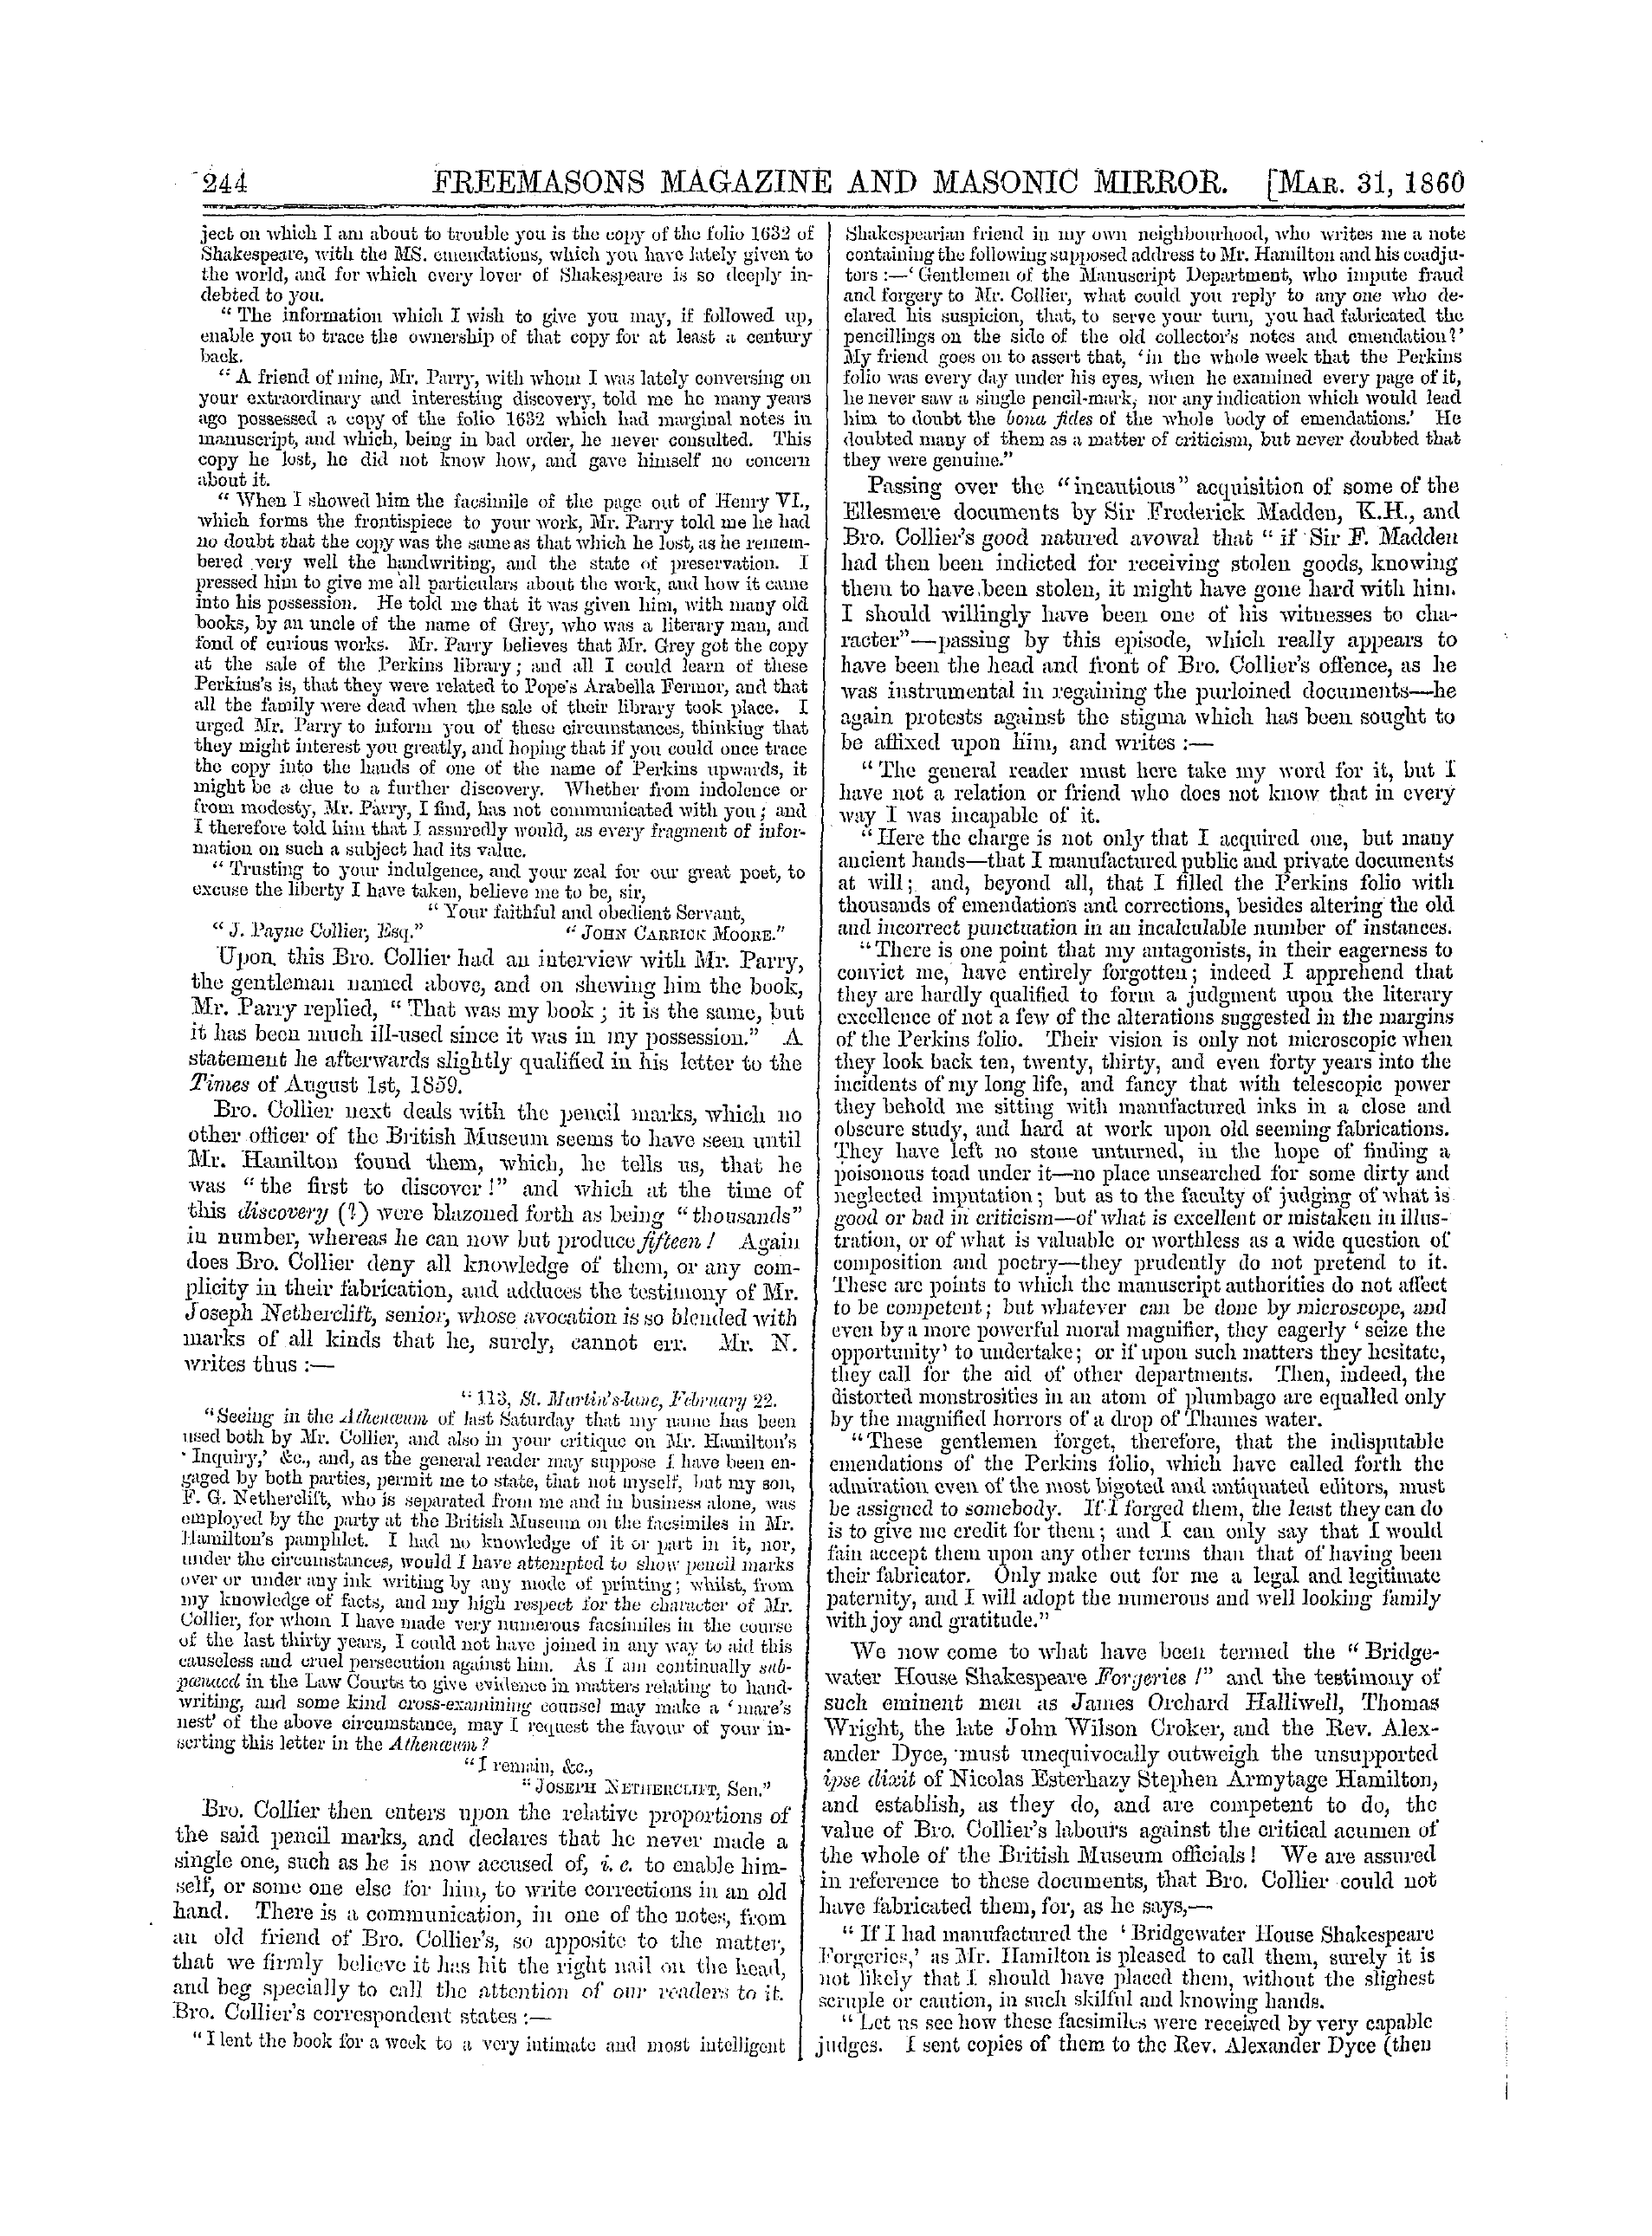 The Freemasons' Monthly Magazine: 1860-03-31 - The British Musrum Slander And Bro. John Payne Collier.*